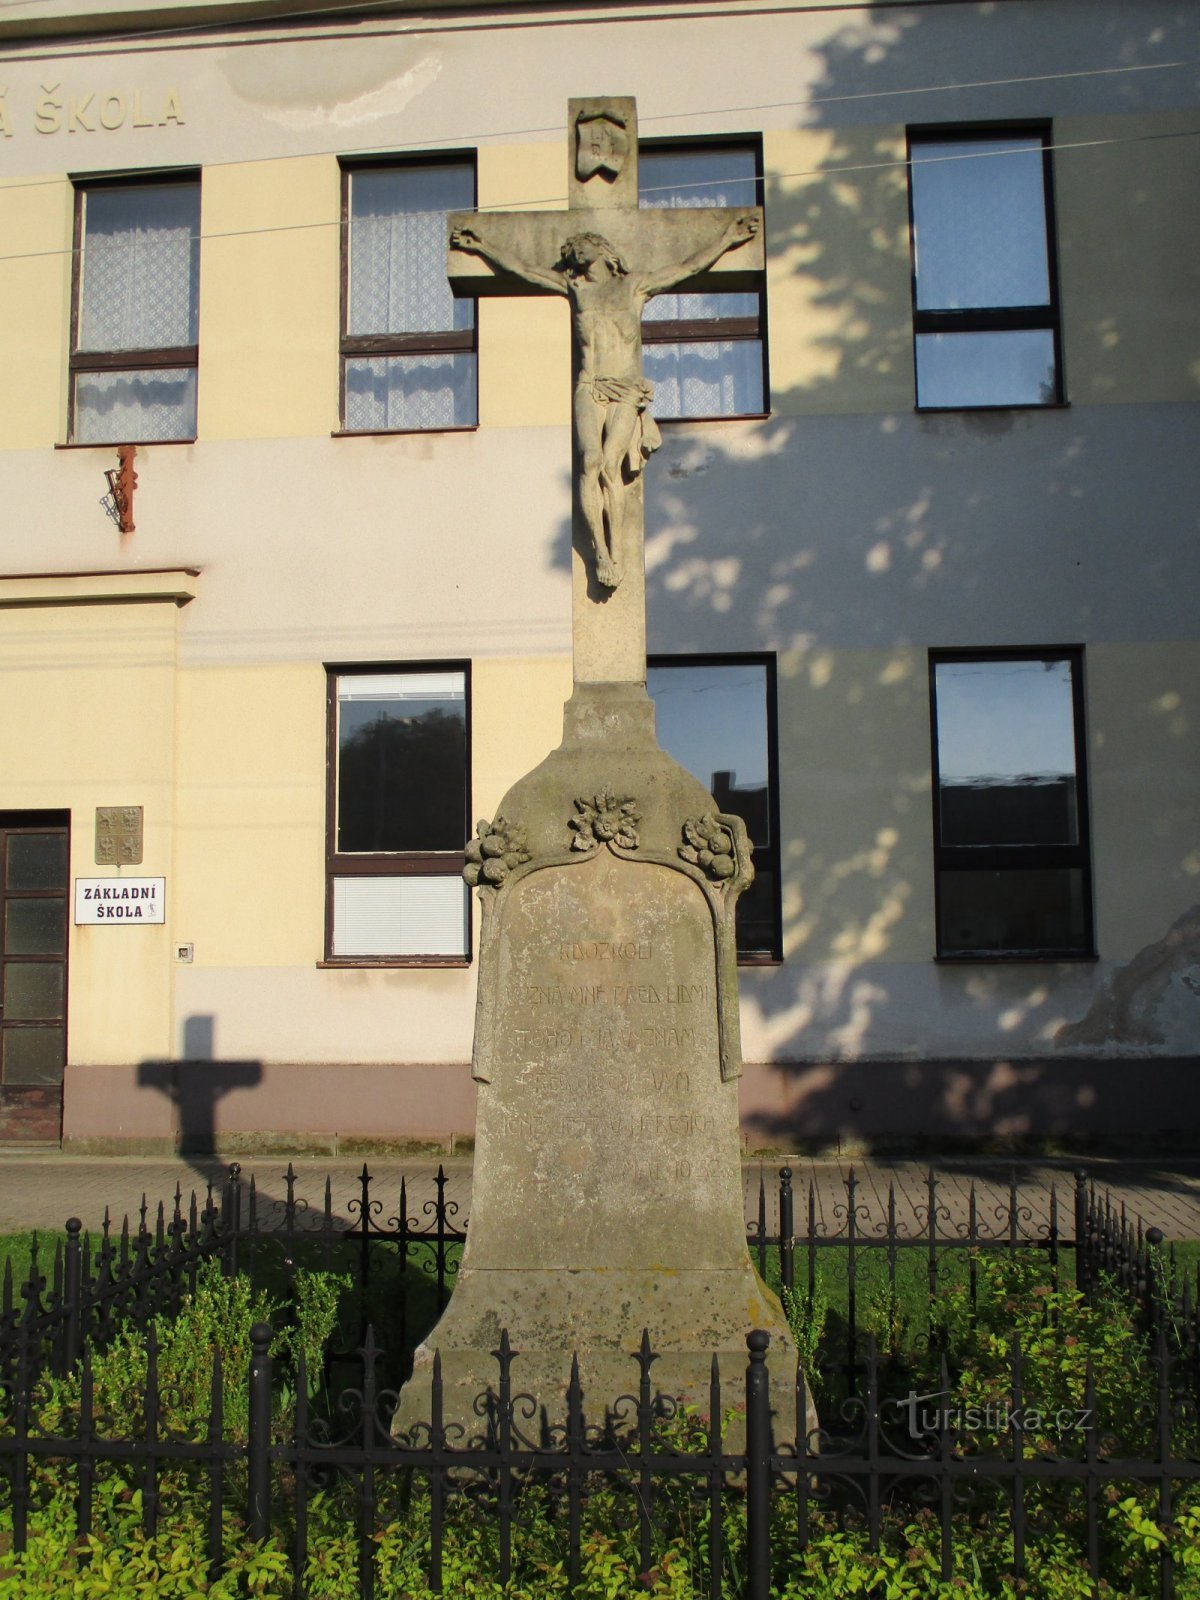 Croce davanti alla scuola (Dobřenice, 7.6.2019 giugno XNUMX)